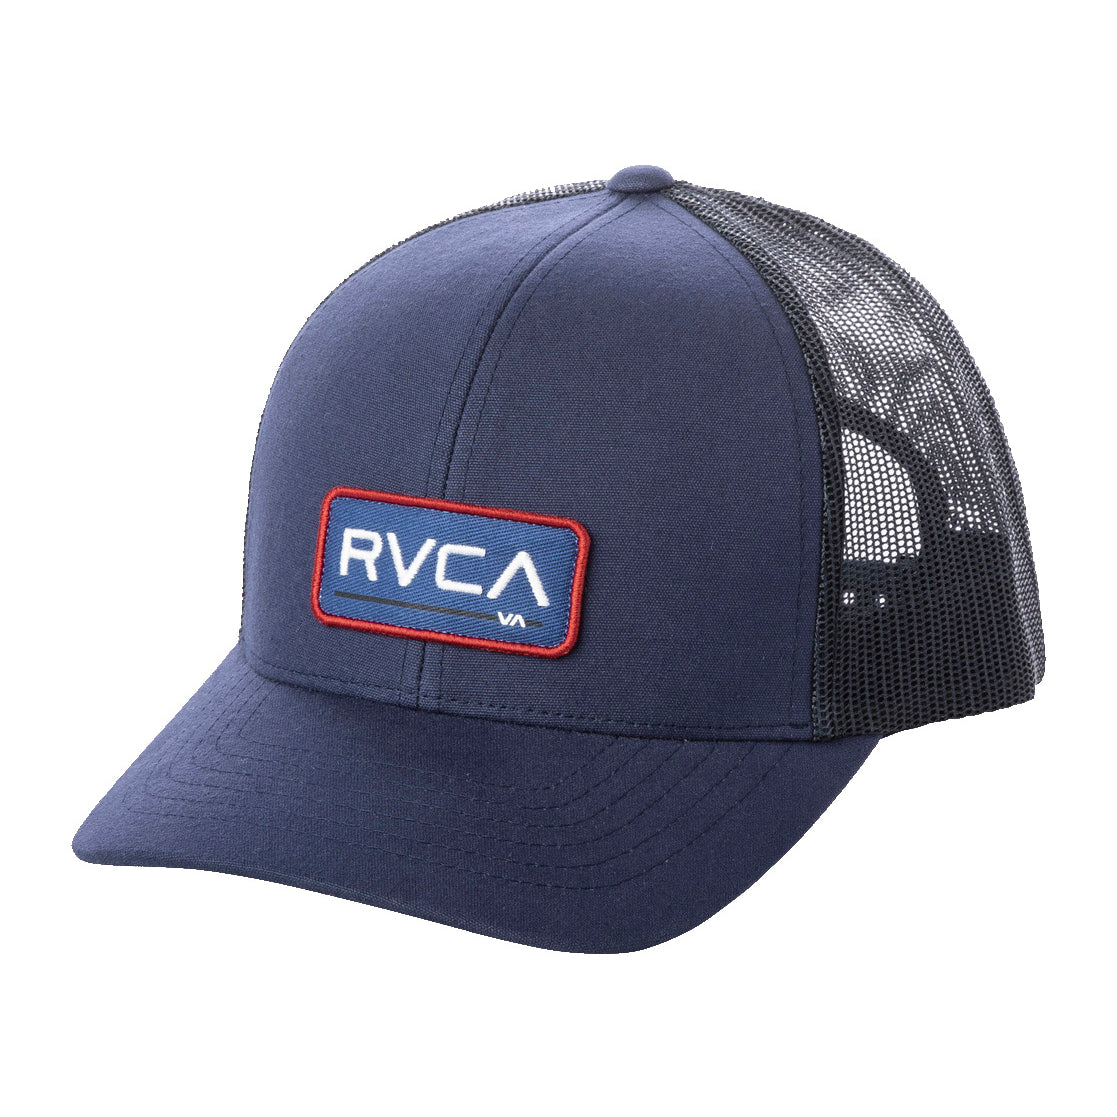 RVCA Ticket Trucker Hat III MYV OS